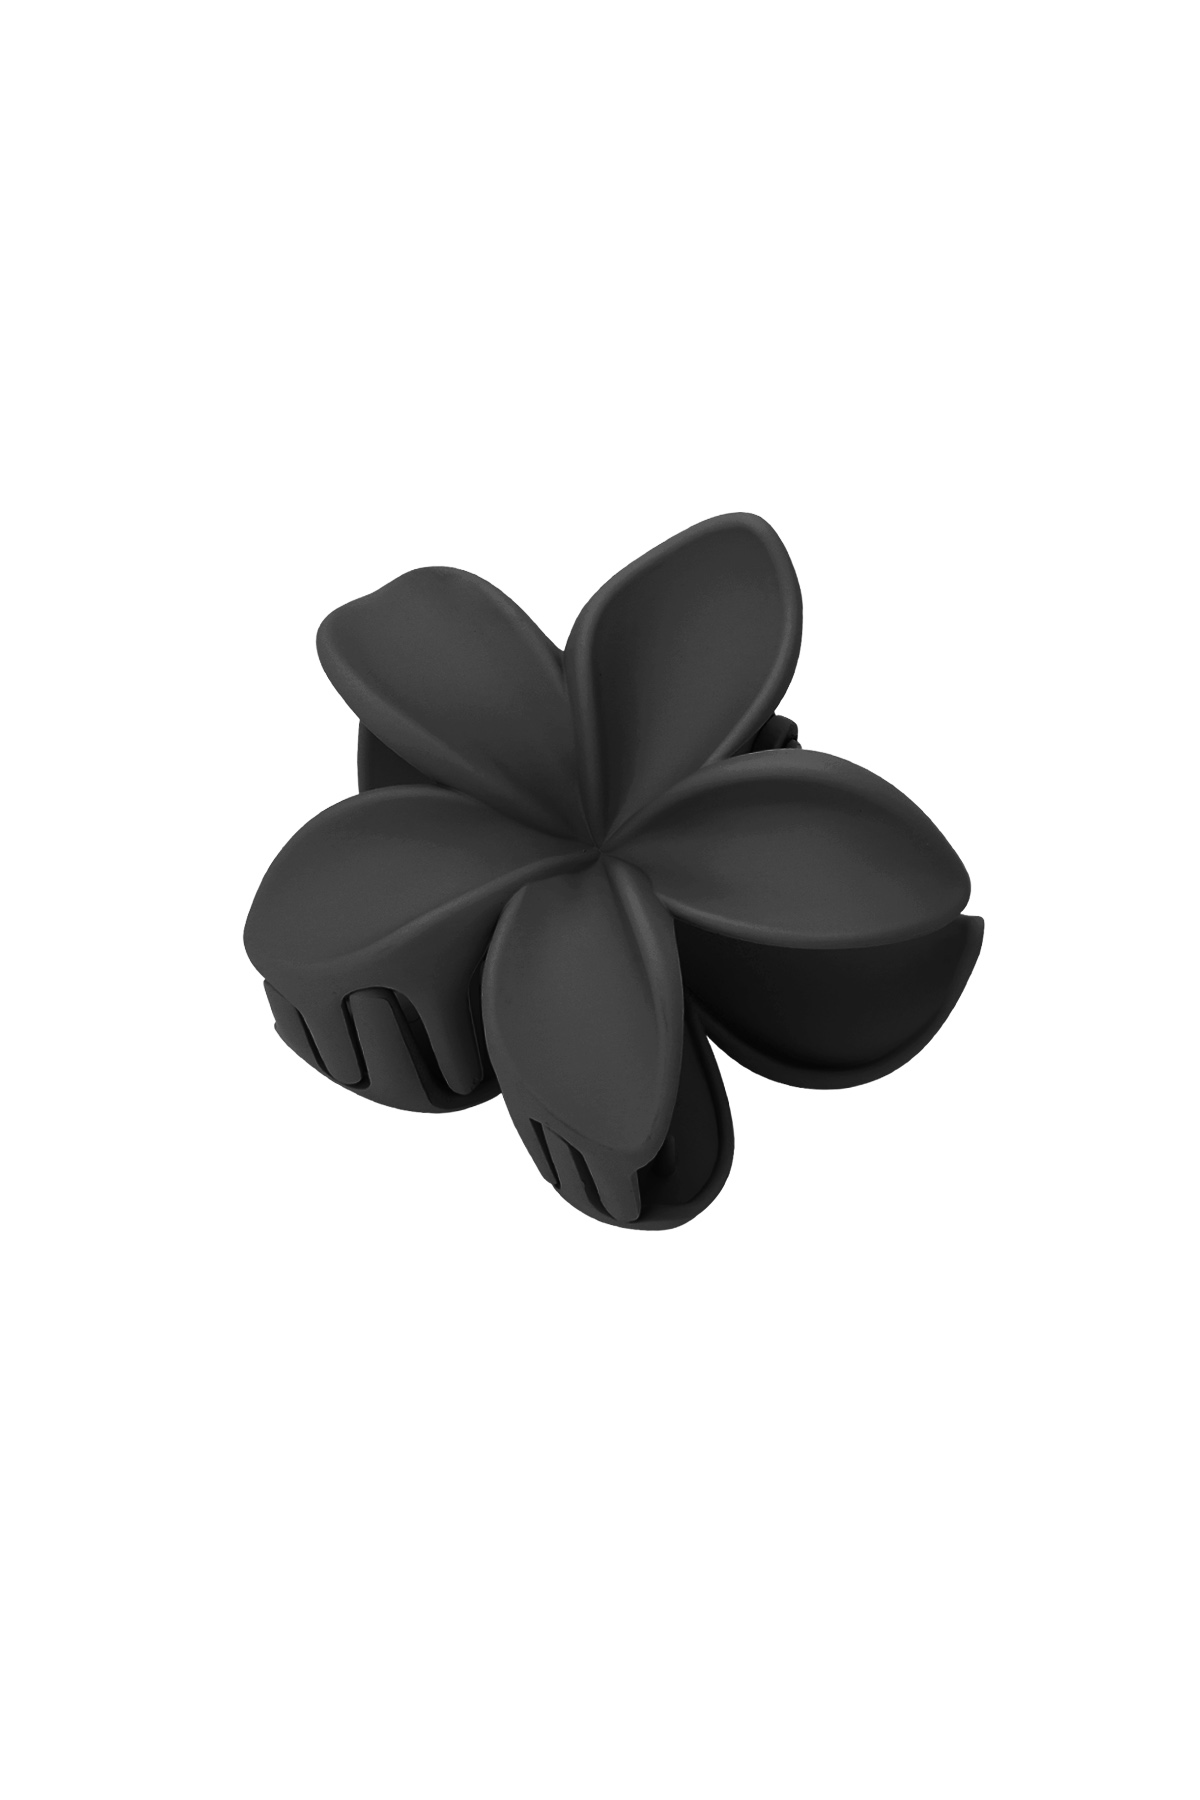 Saç tokası çiçek - siyah Plastik h5 